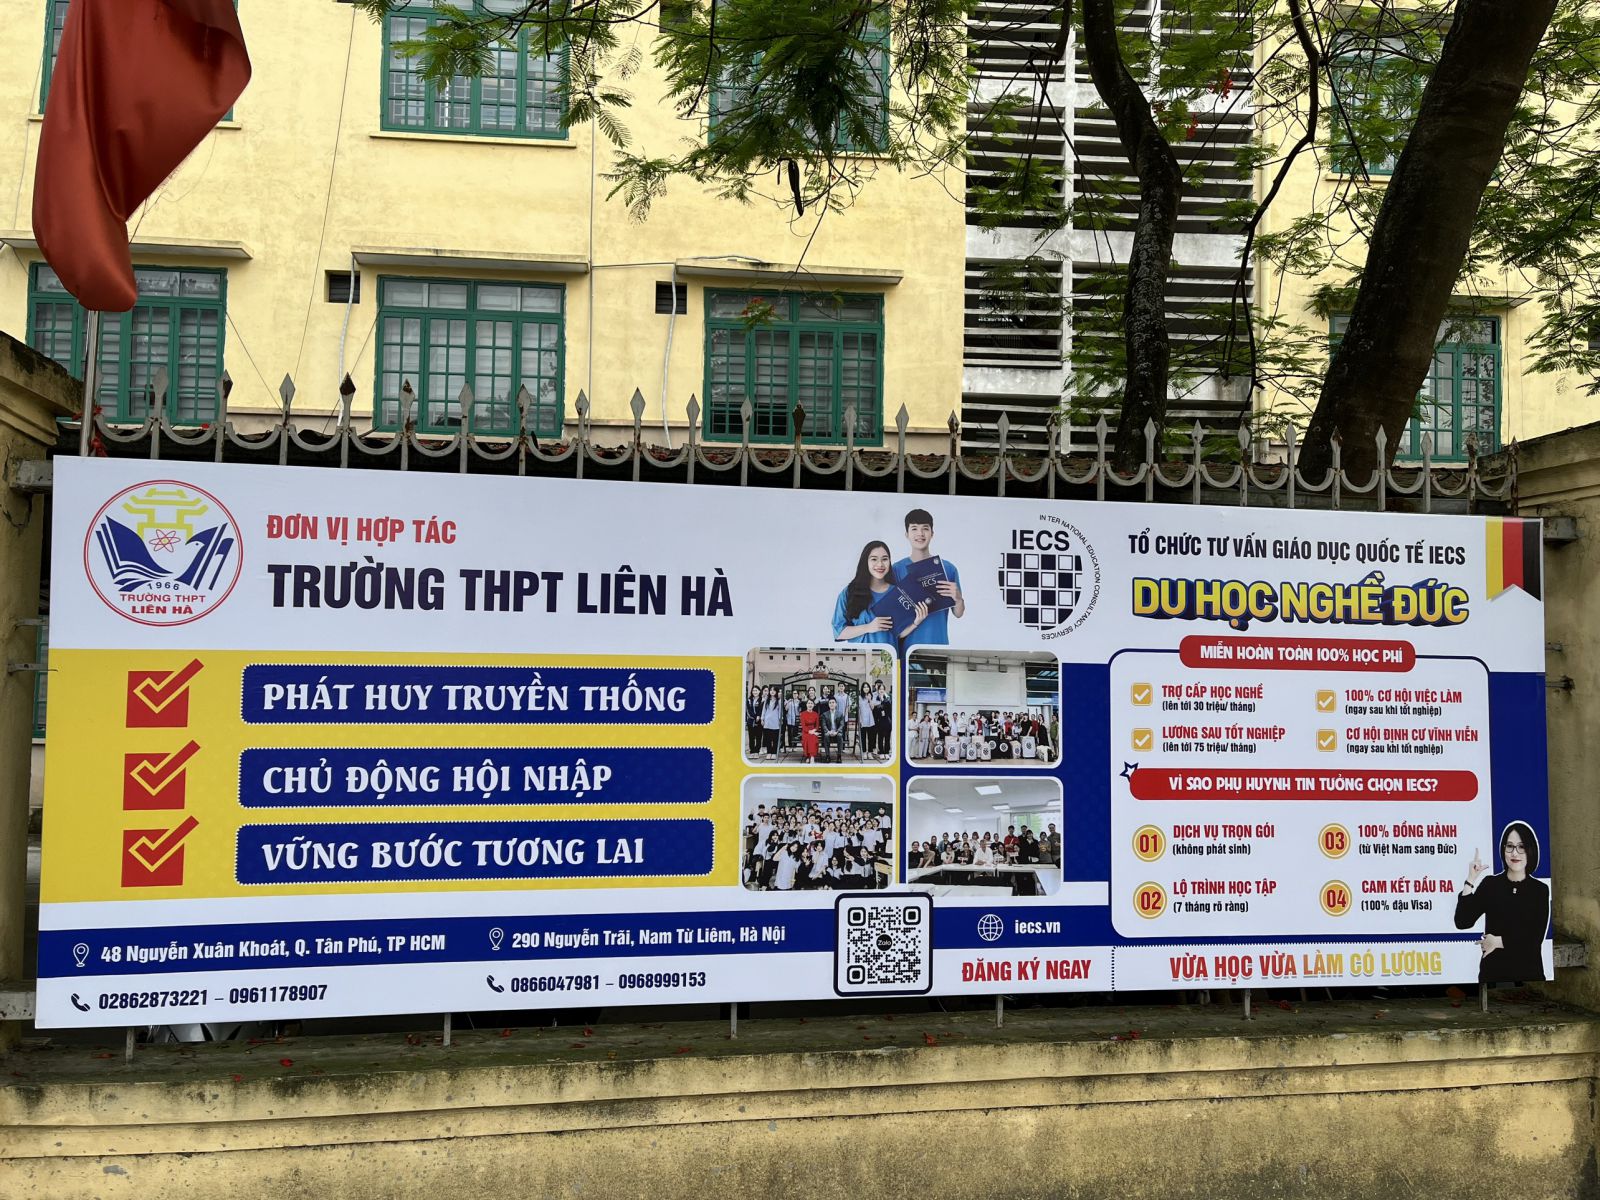 Biển hiệu quảng cáo khu vực các trường học tại Hà Nội và đông anh